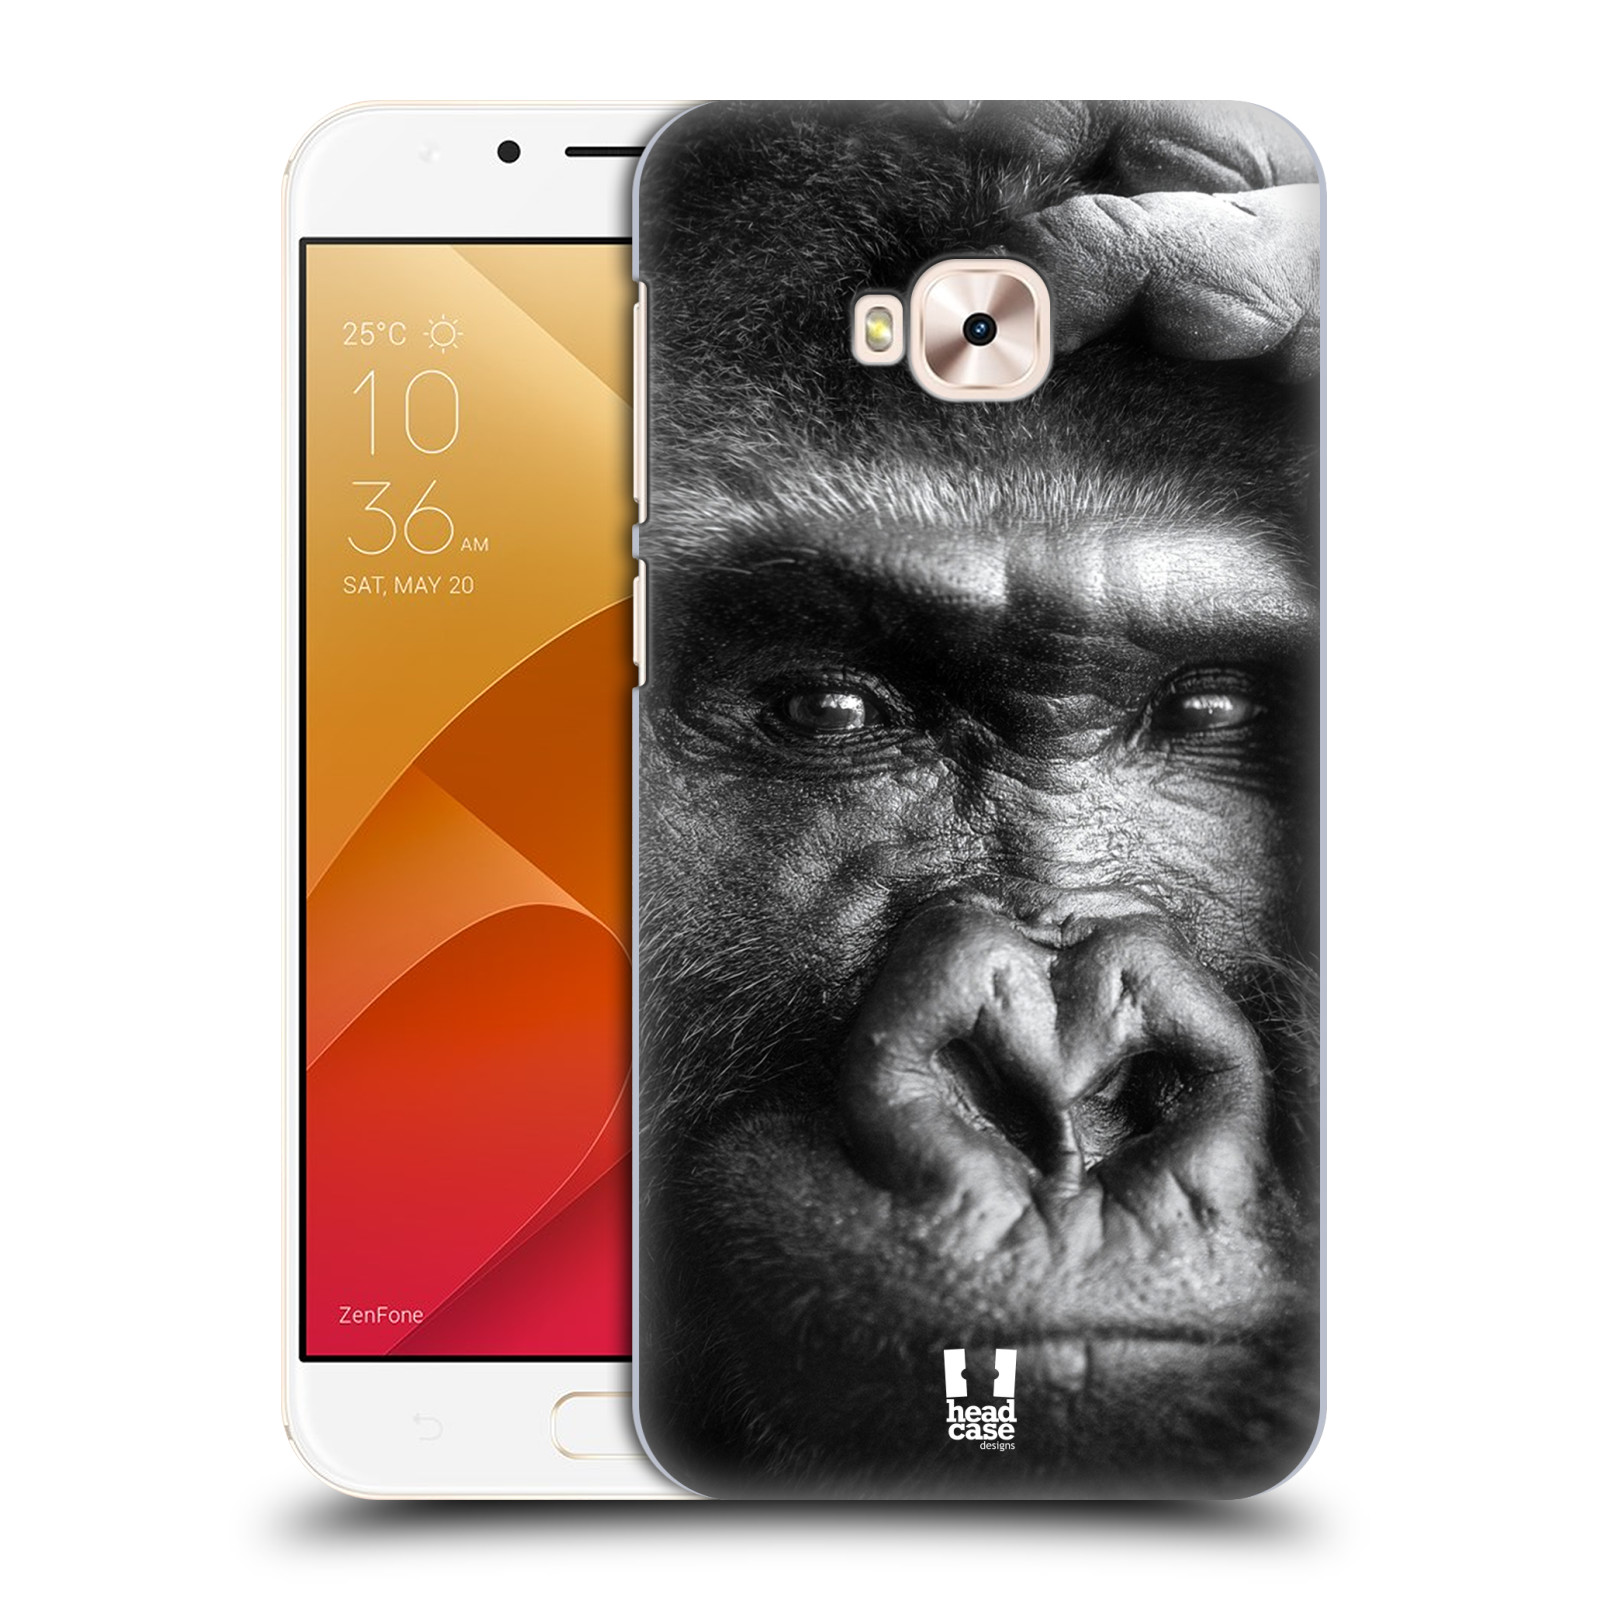 HEAD CASE plastový obal na mobil Asus Zenfone 4 Selfie Pro ZD552KL vzor Divočina, Divoký život a zvířata foto GORILA TVÁŘ